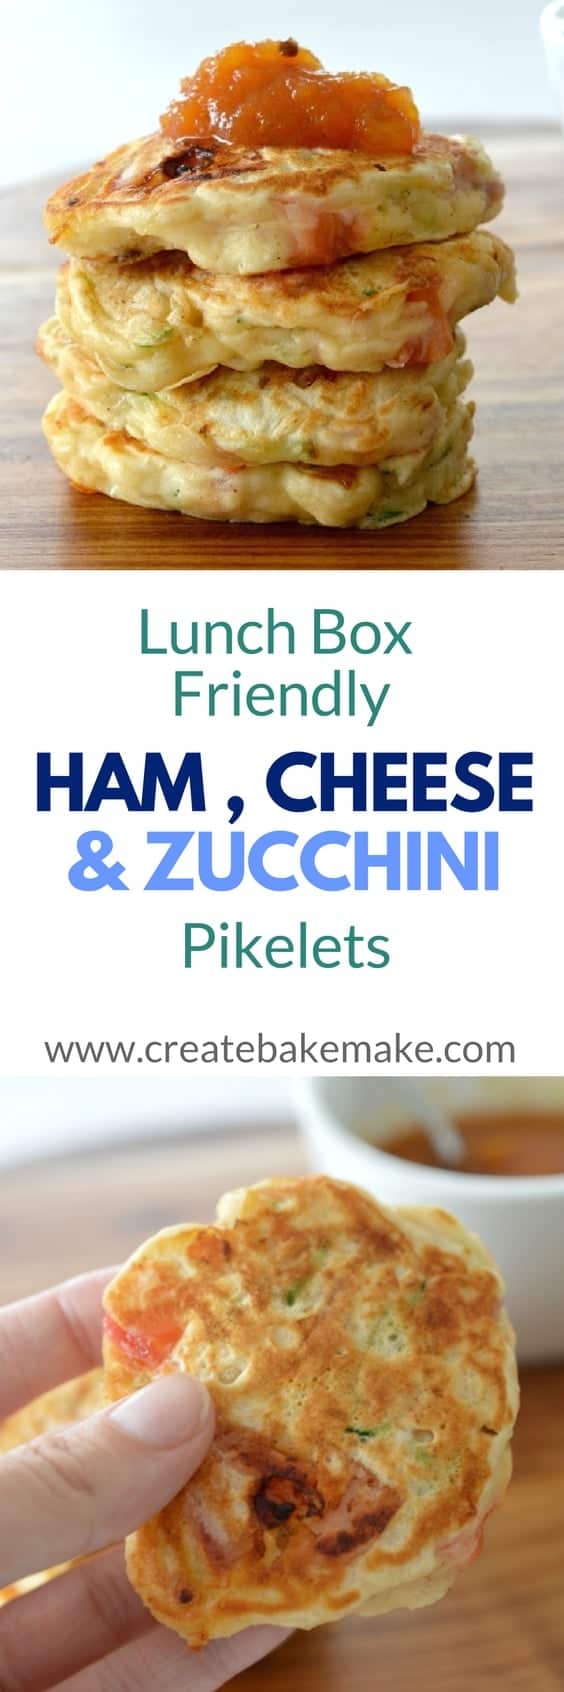 Ham Cheese & Zucchini Pikelets